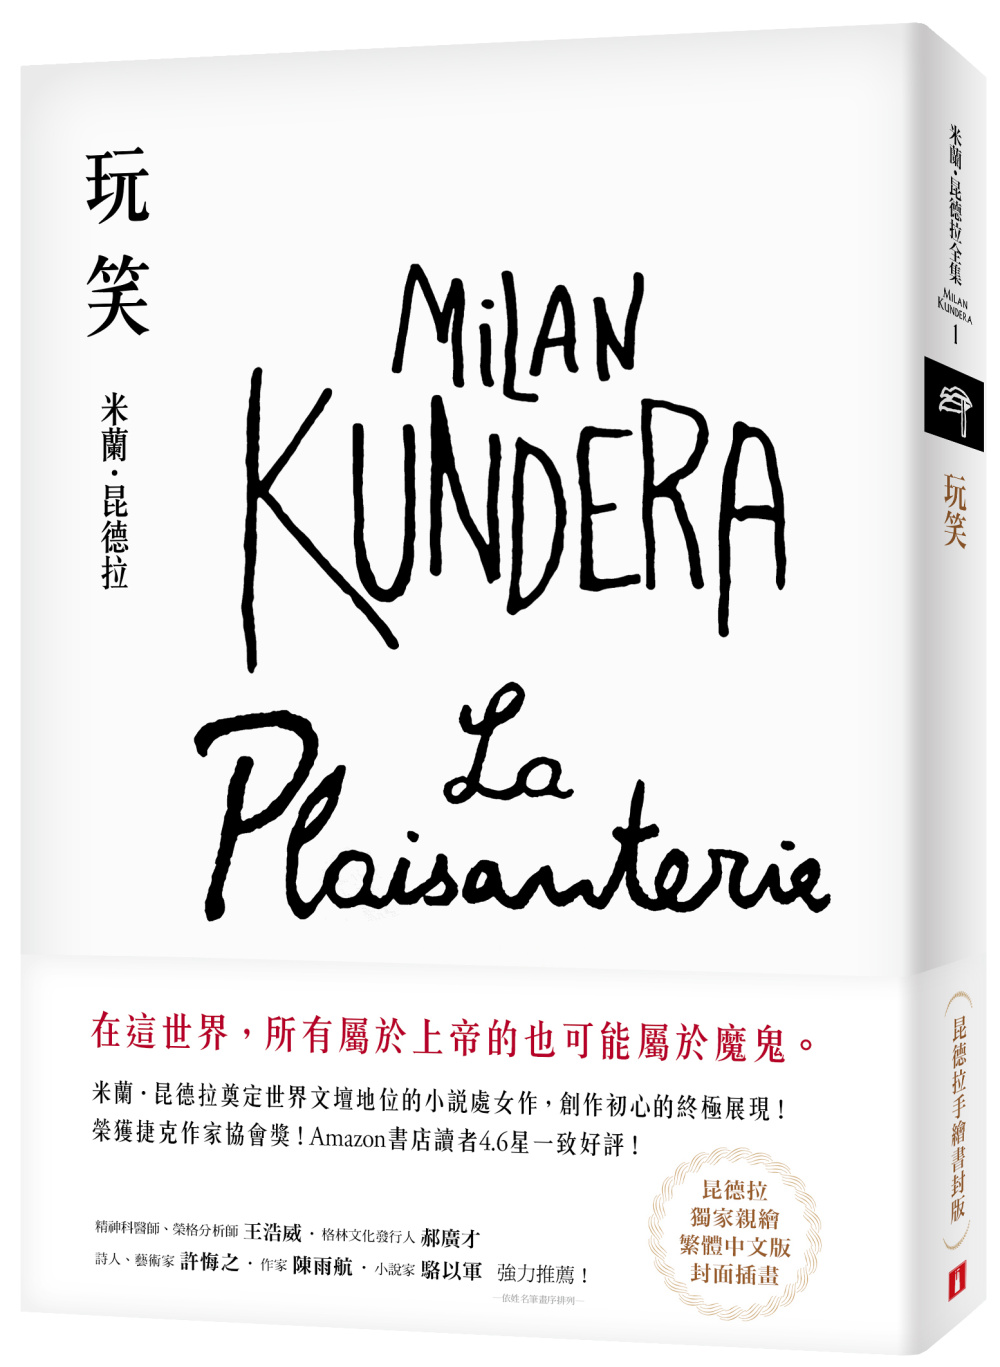 玩笑【昆德拉手繪書封版】：米蘭．昆德拉奠定世界文壇地位的小說處女作，創作初心的終極展現！